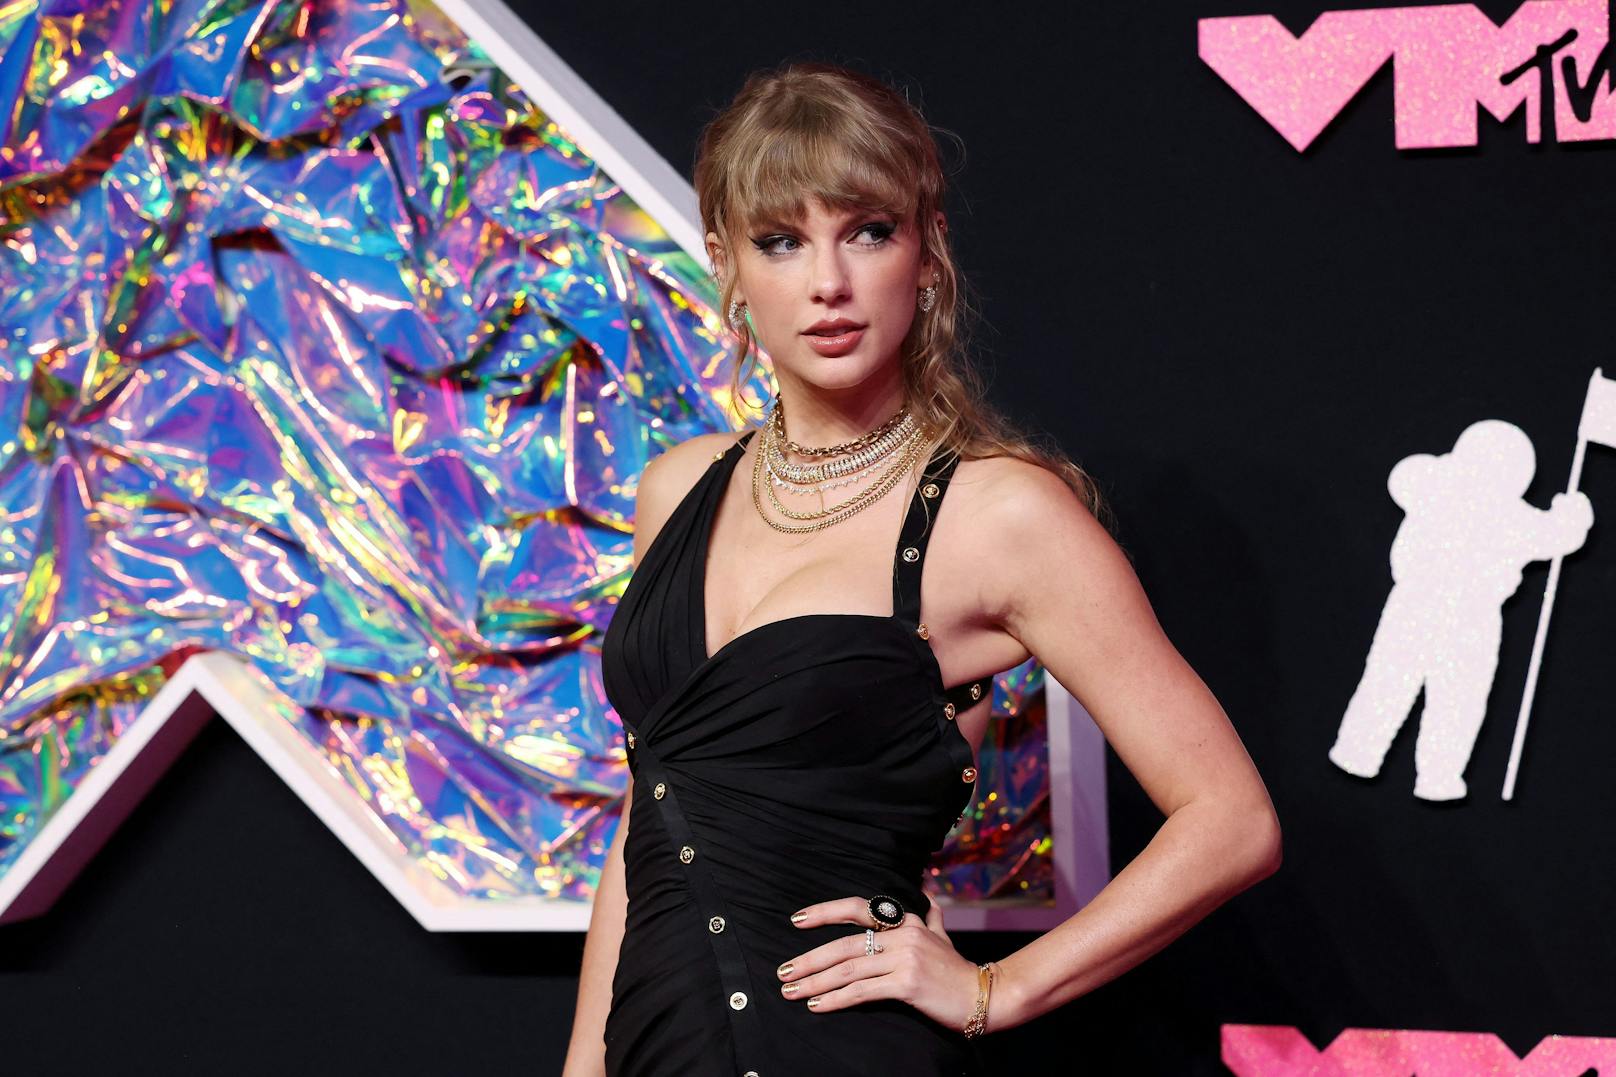 Neue Richtung: Verabschiedet sich Taylor Swift vom Pop?